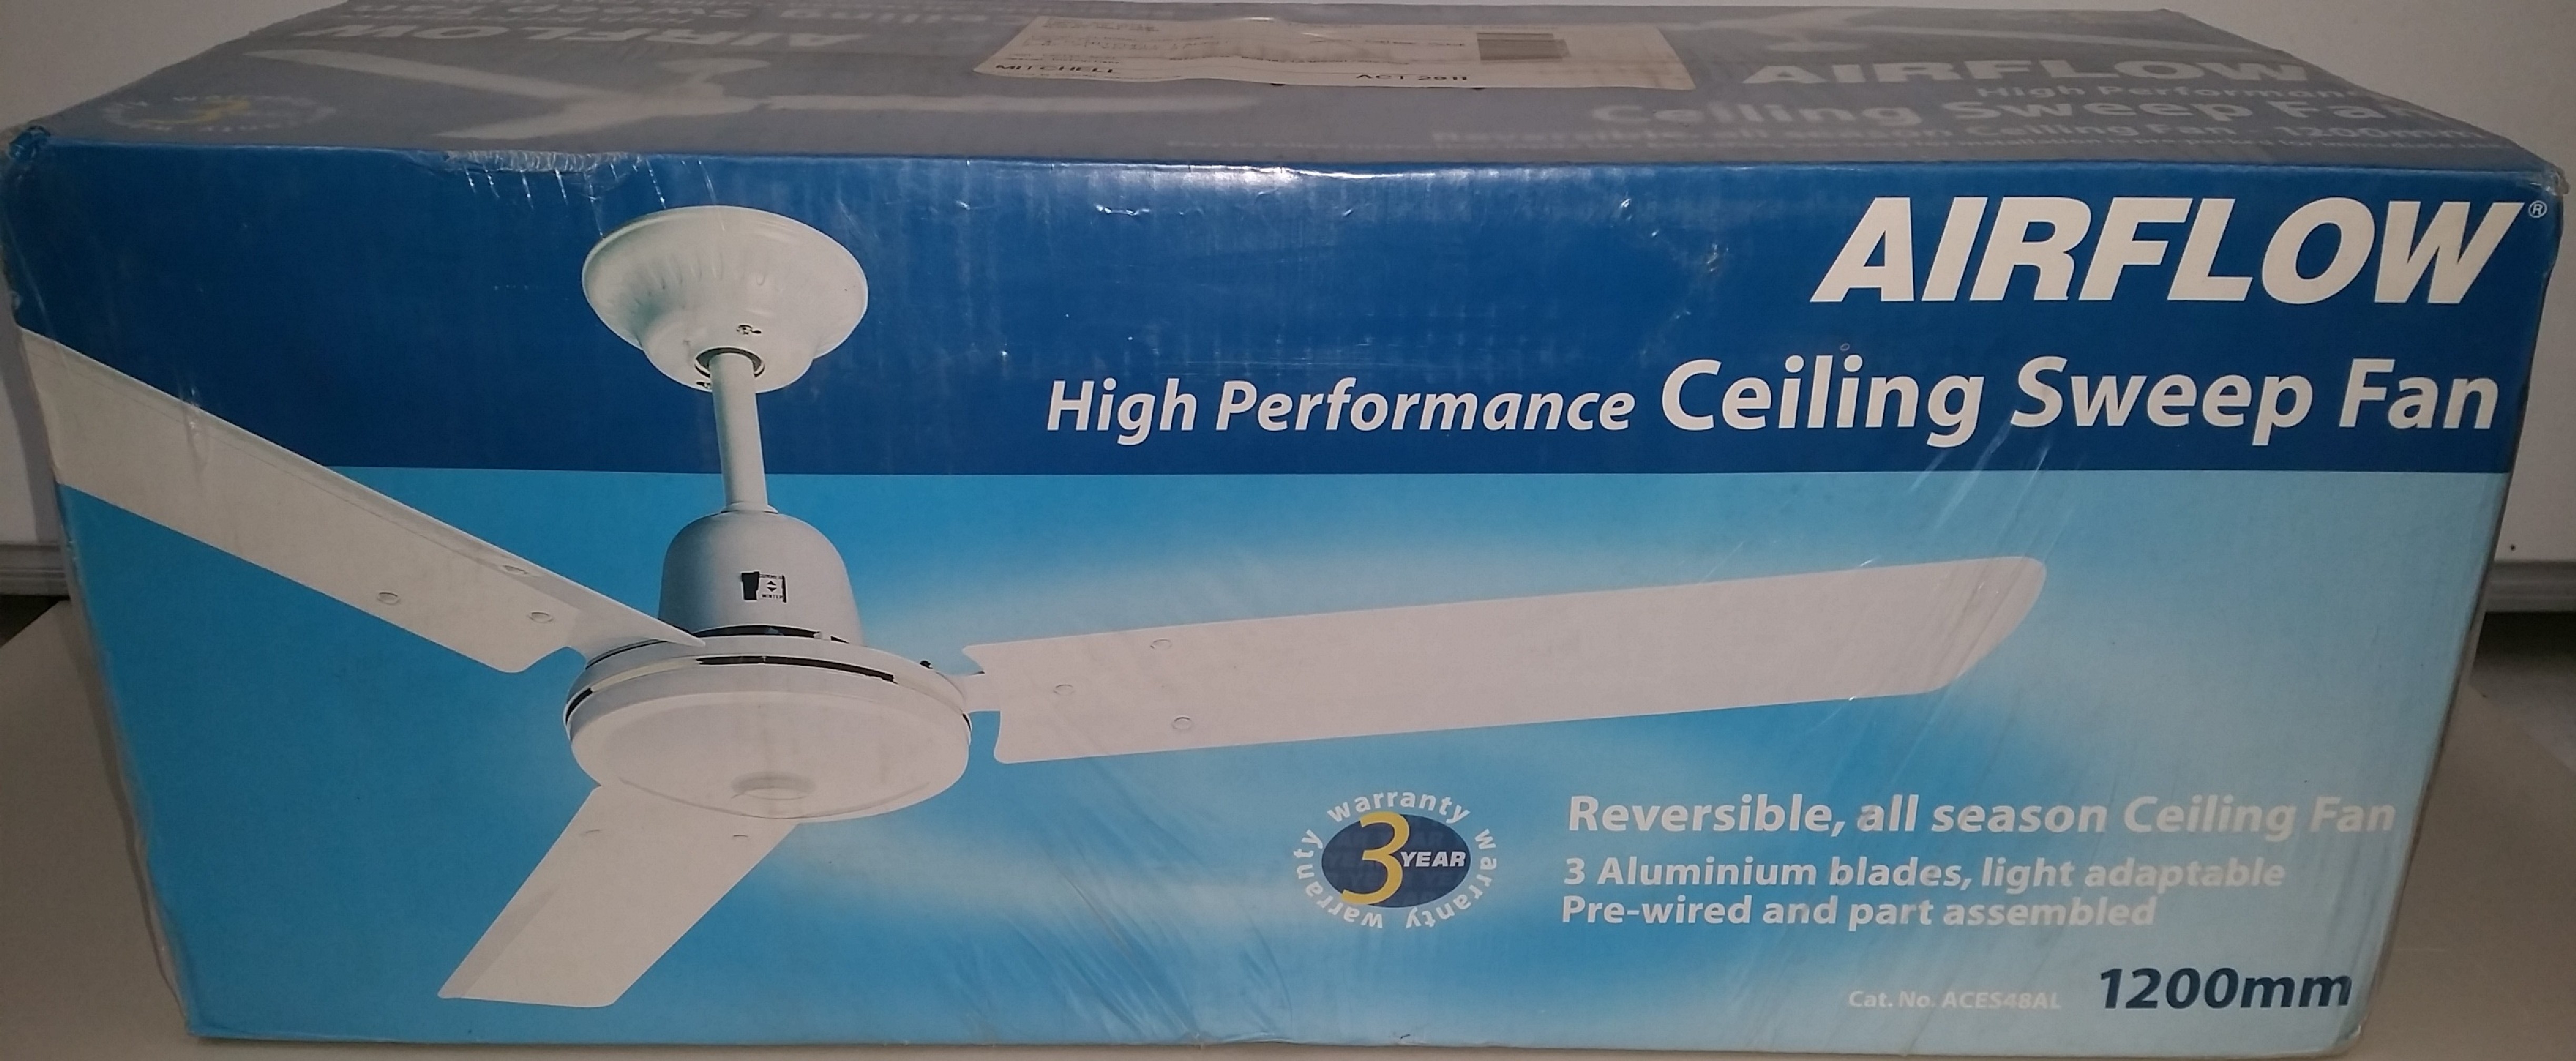 Airflow 1200mm Ceiling Fan Brand New